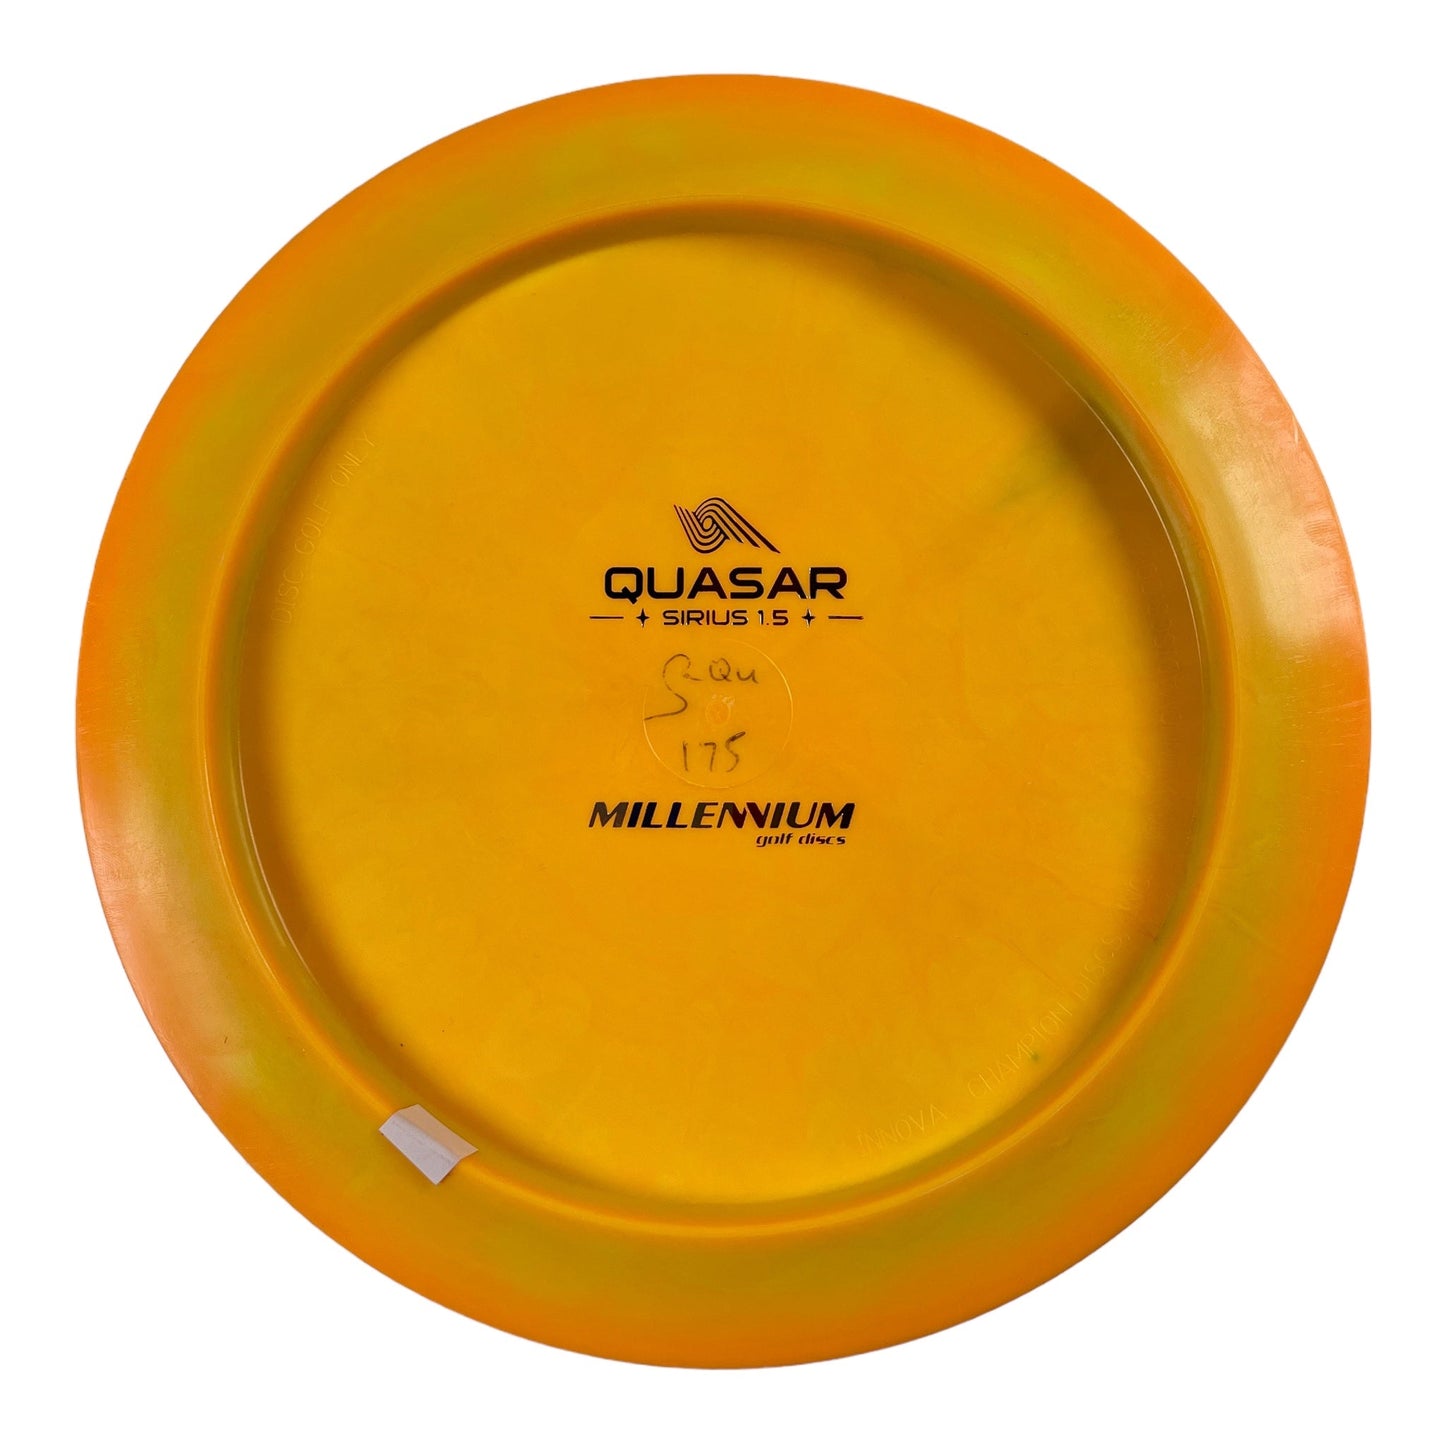 Millennium Golf Discs Quasar | Sirius | Orange/USA 175g Disc Golf